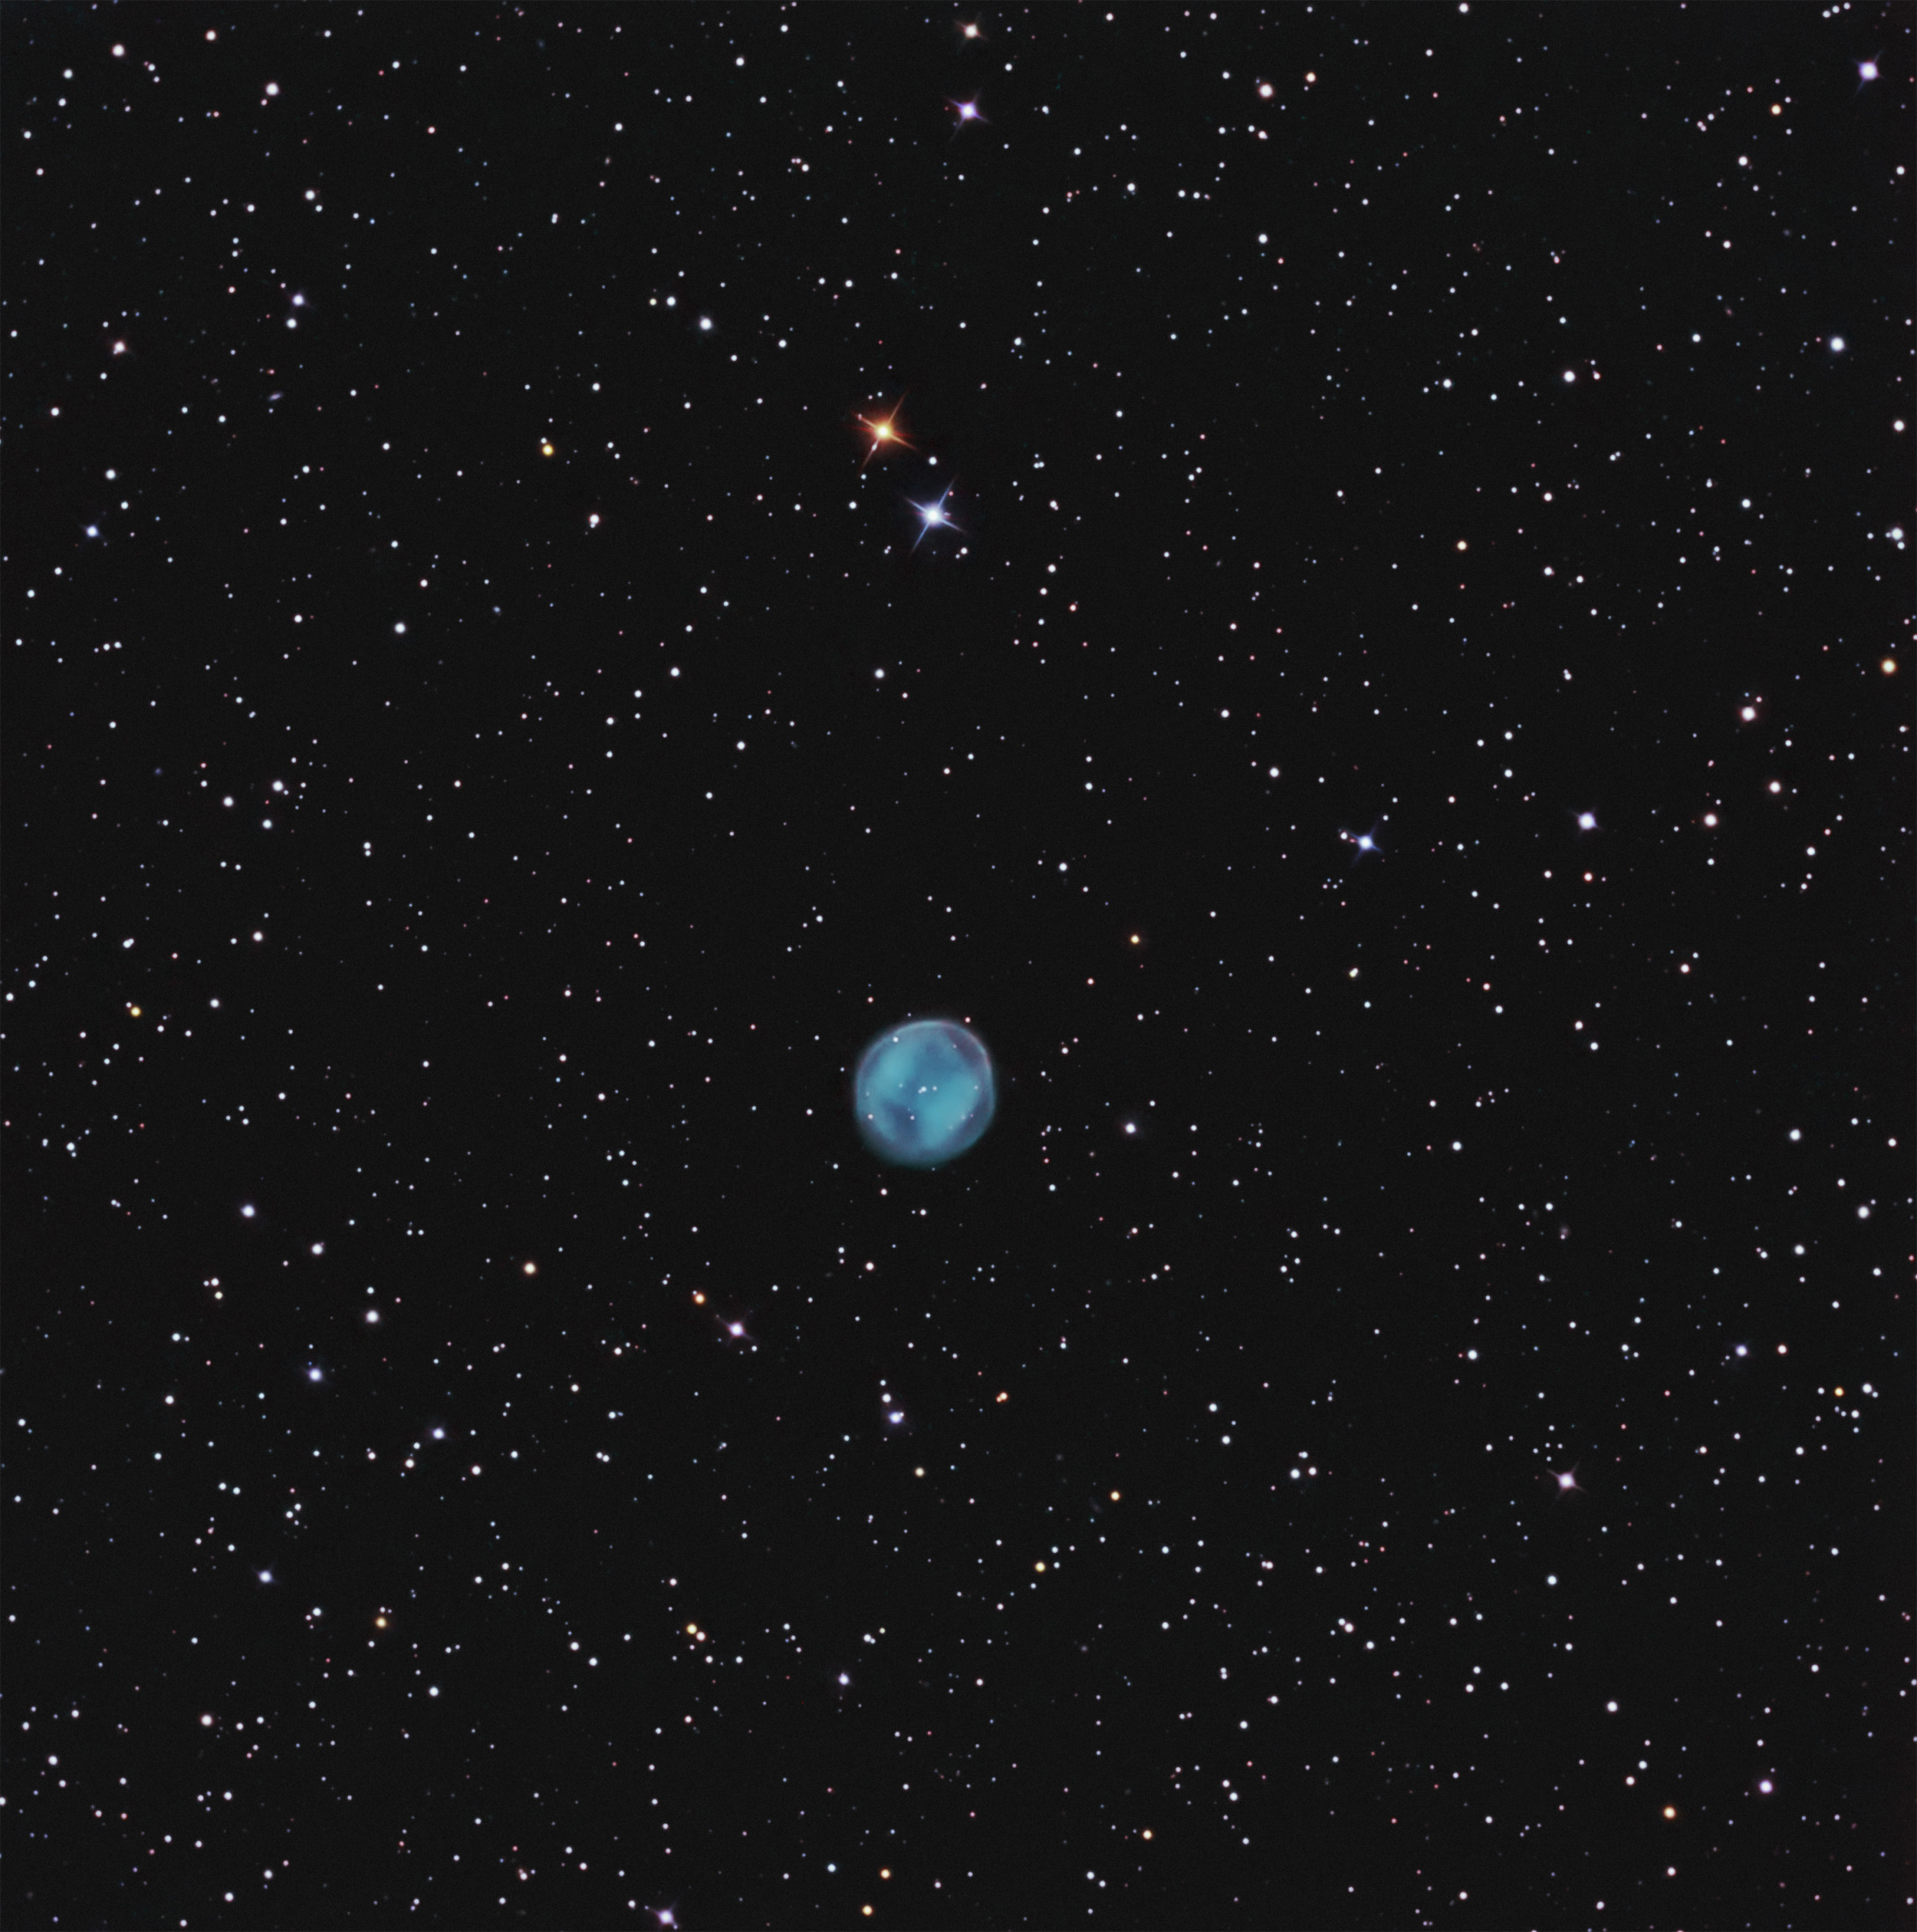 Southern Owl Nebula,  PK 283+25.1, K1-22